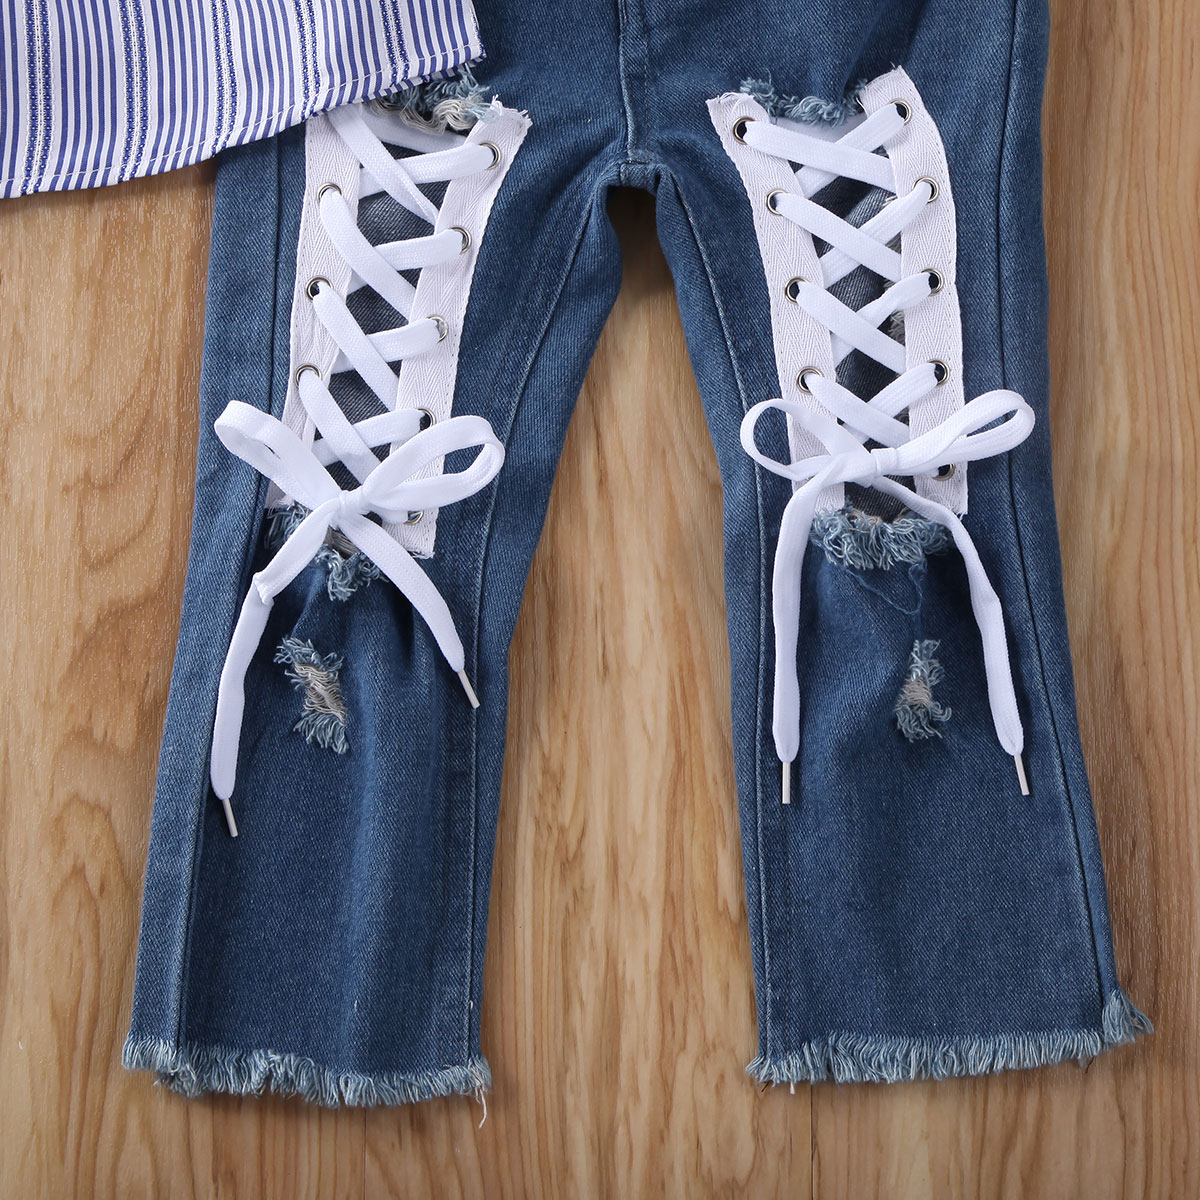 LZH Kleinkind Outfit Sets f/ür Baby M/ädchen Drucken Tops Loch Jeans Anzug M/ädchen Langarm Tops Cowboy Loch Hosen 2 Outfits